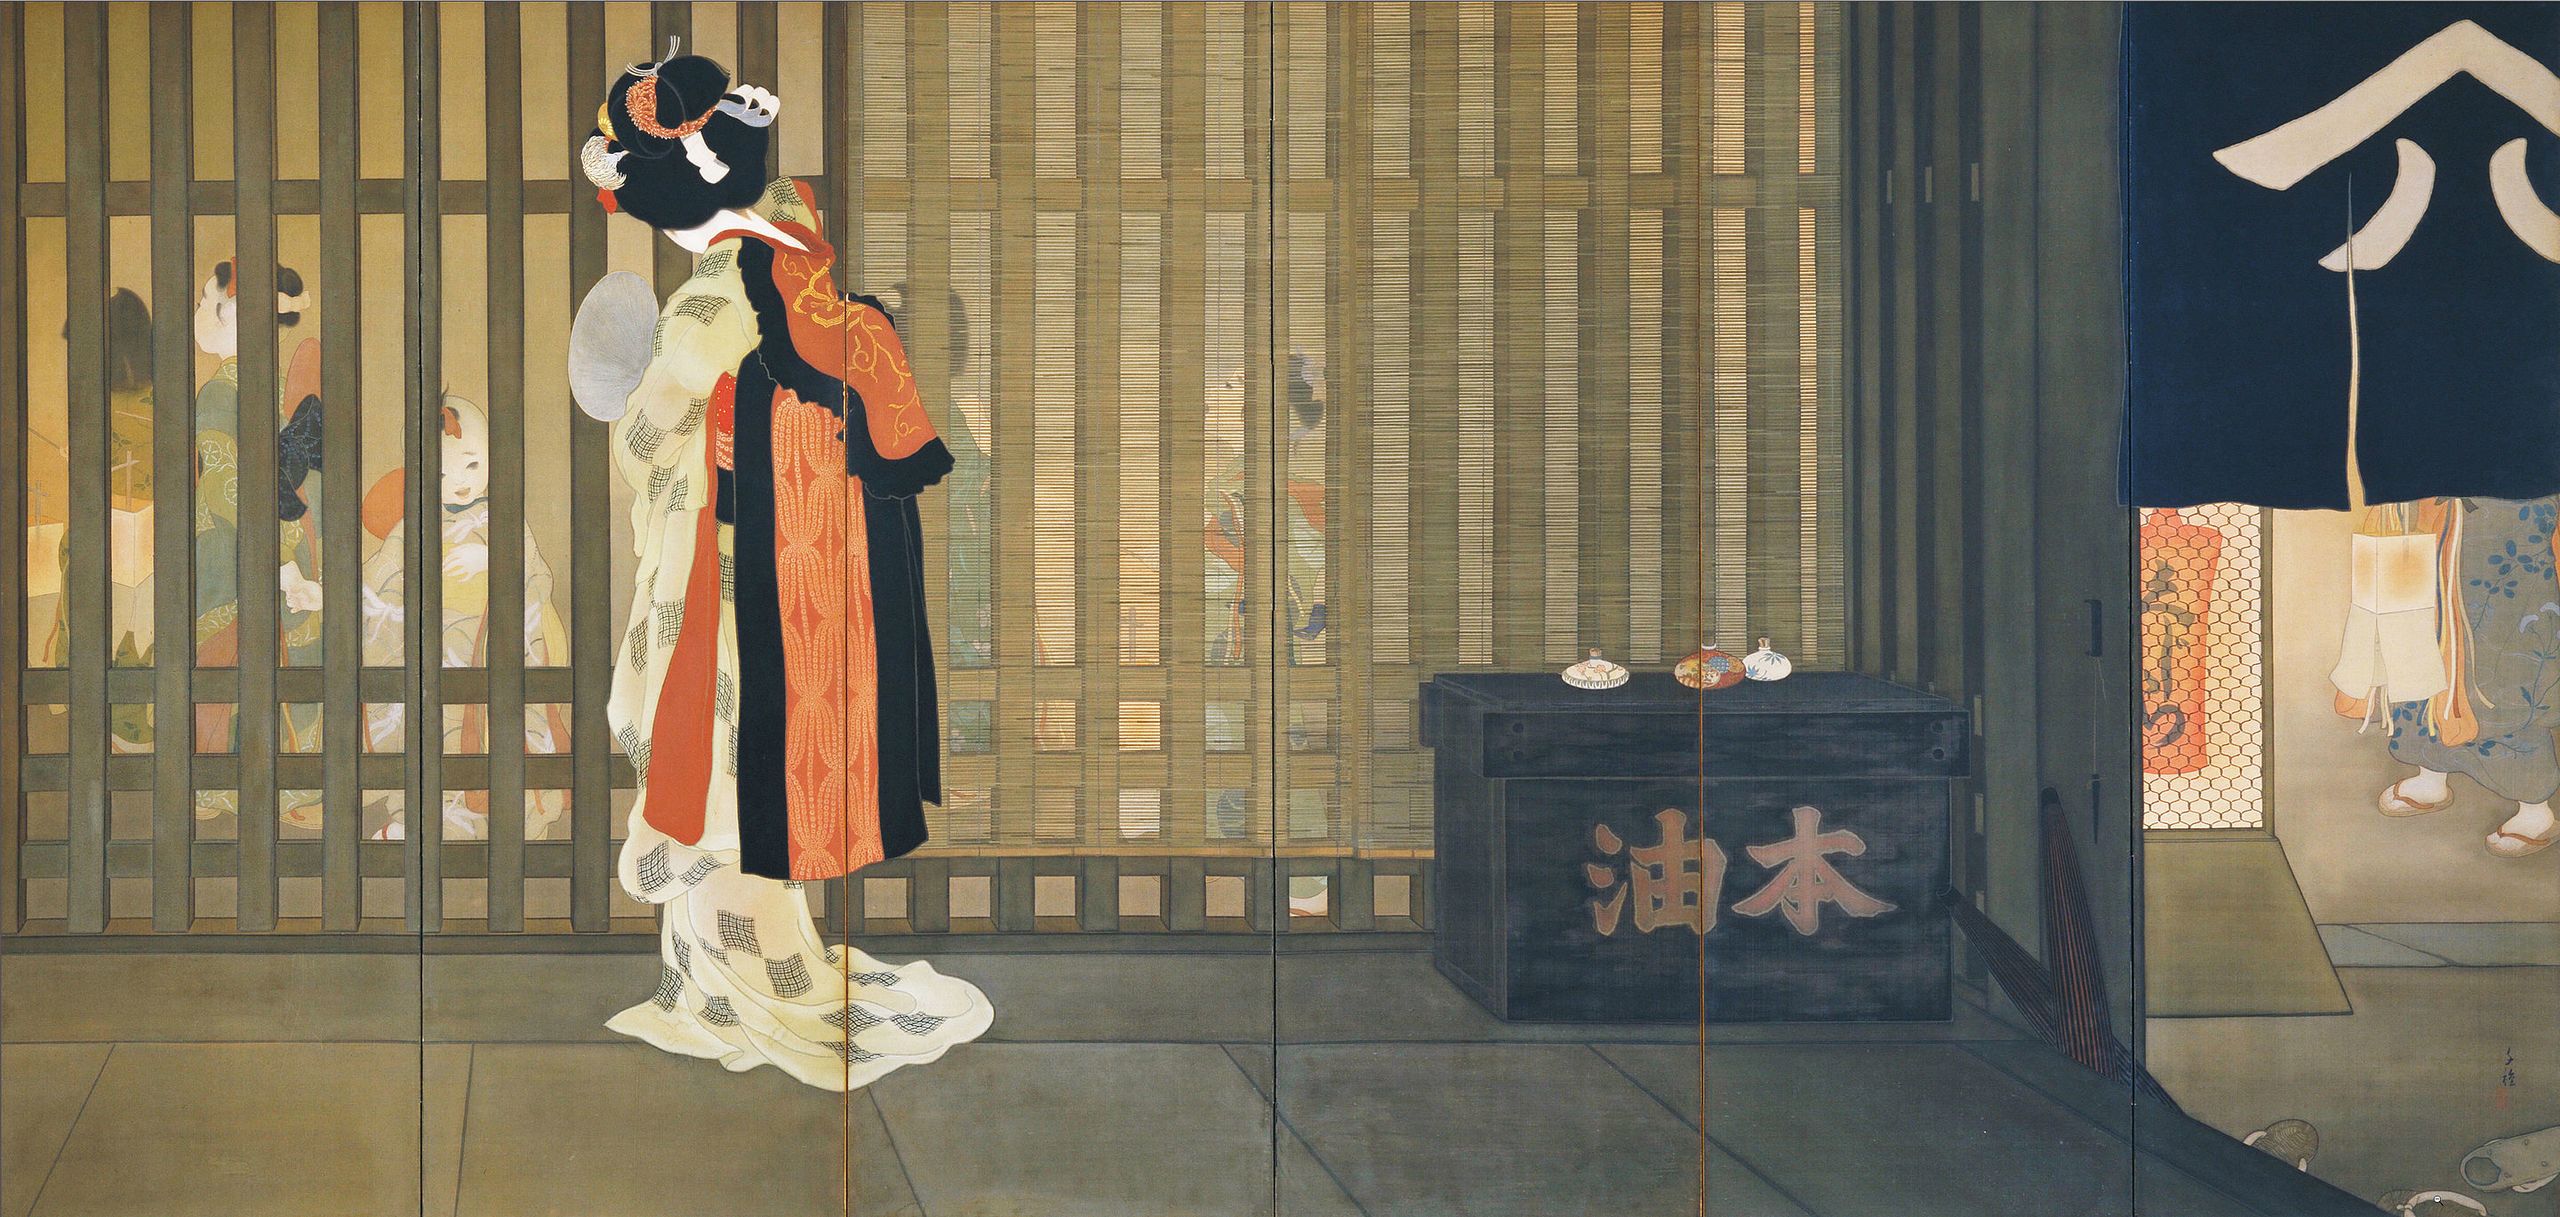 Ongoku by Chigusa Kitani - 1918 - 166 x 342 cm 